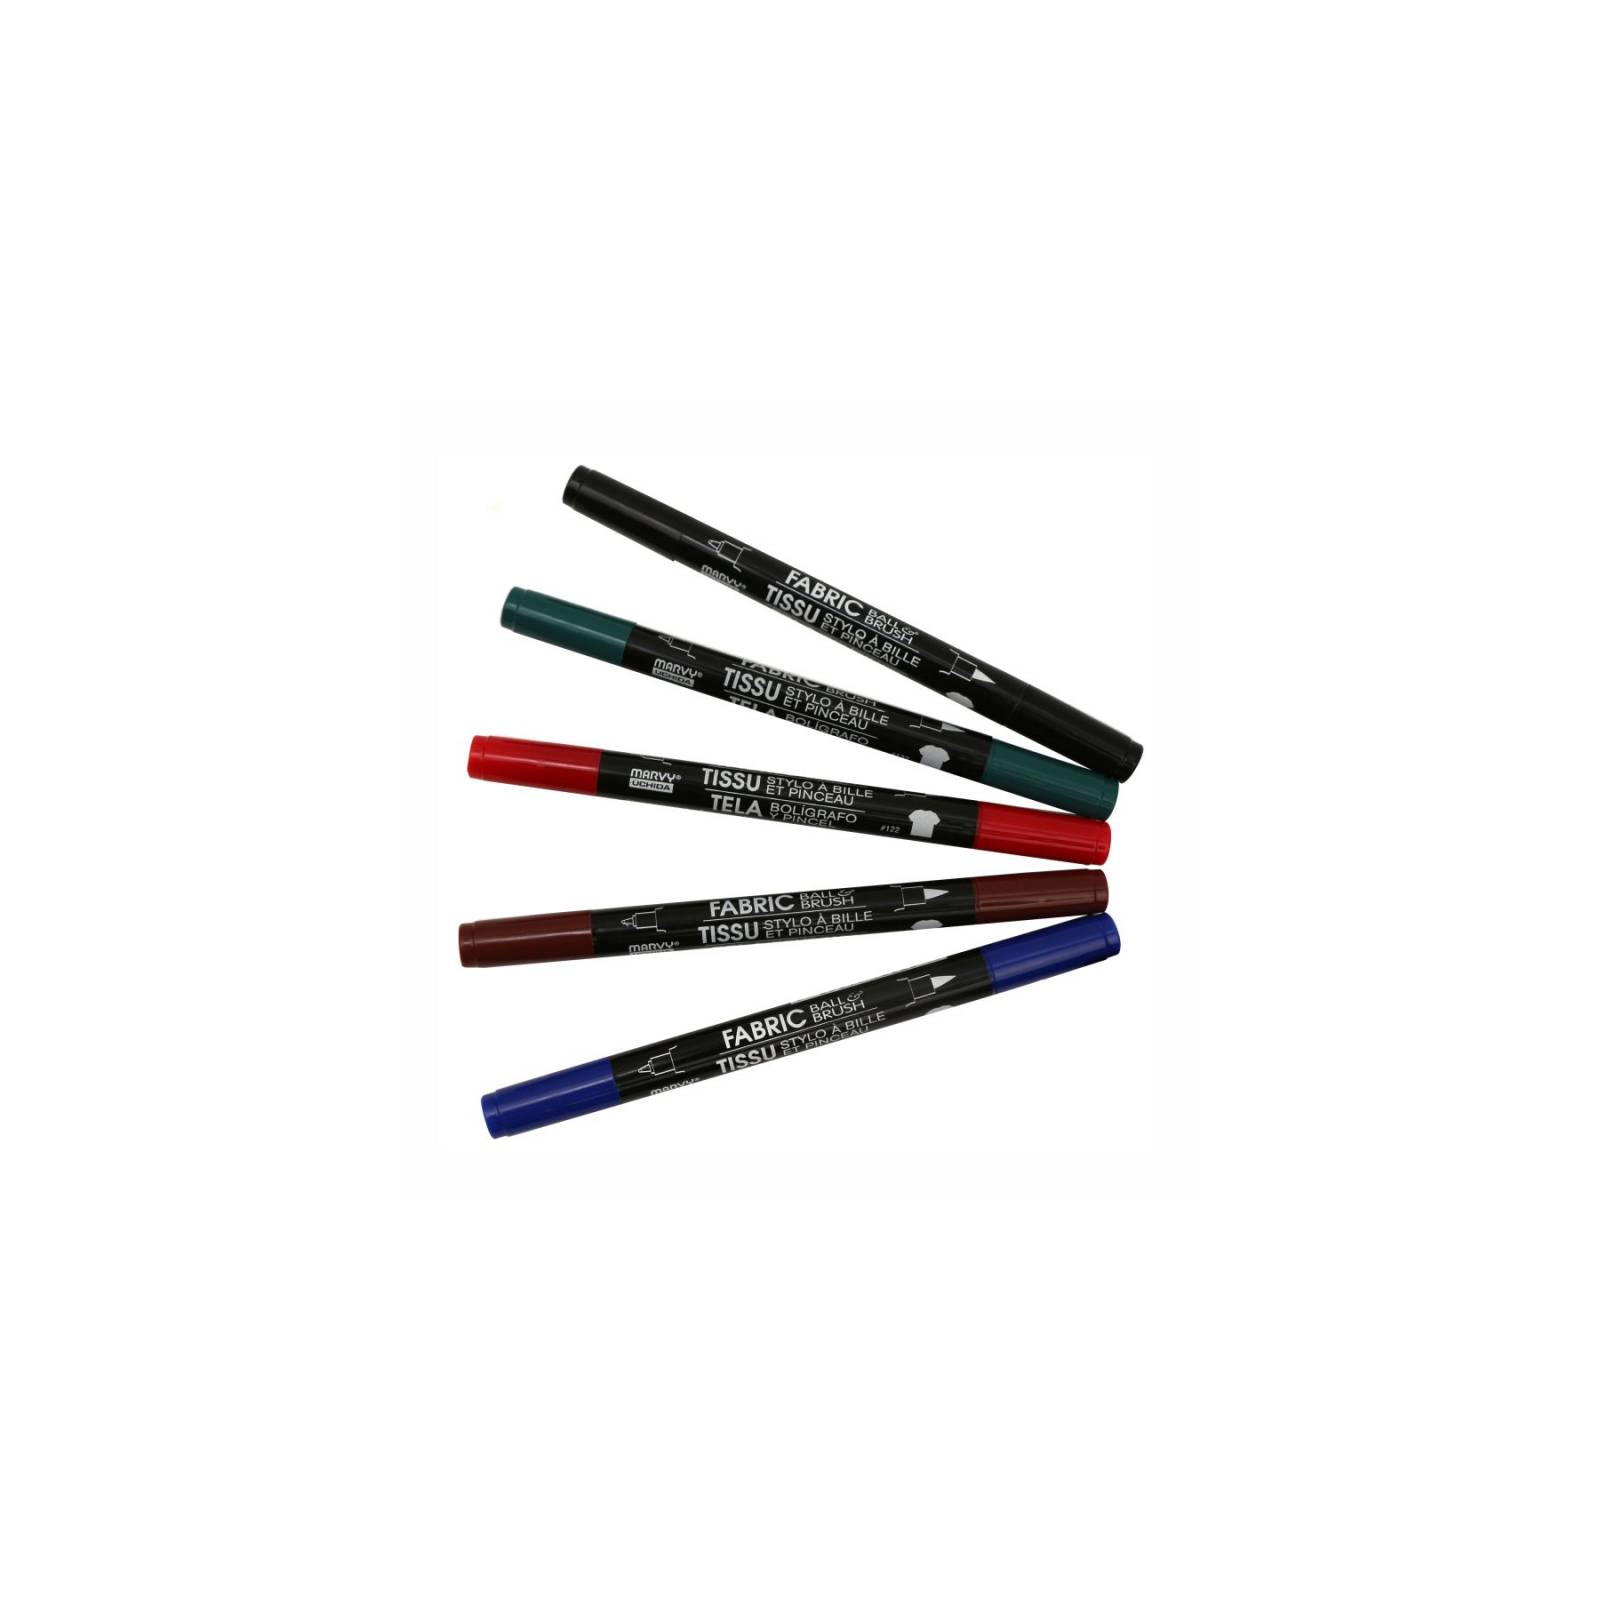 Художественный маркер Marvy Красный, д/св. тканей, двусторонний, 0,75мм, 1-2мм, 122-S, Fabric ball&Brush (028617122229)